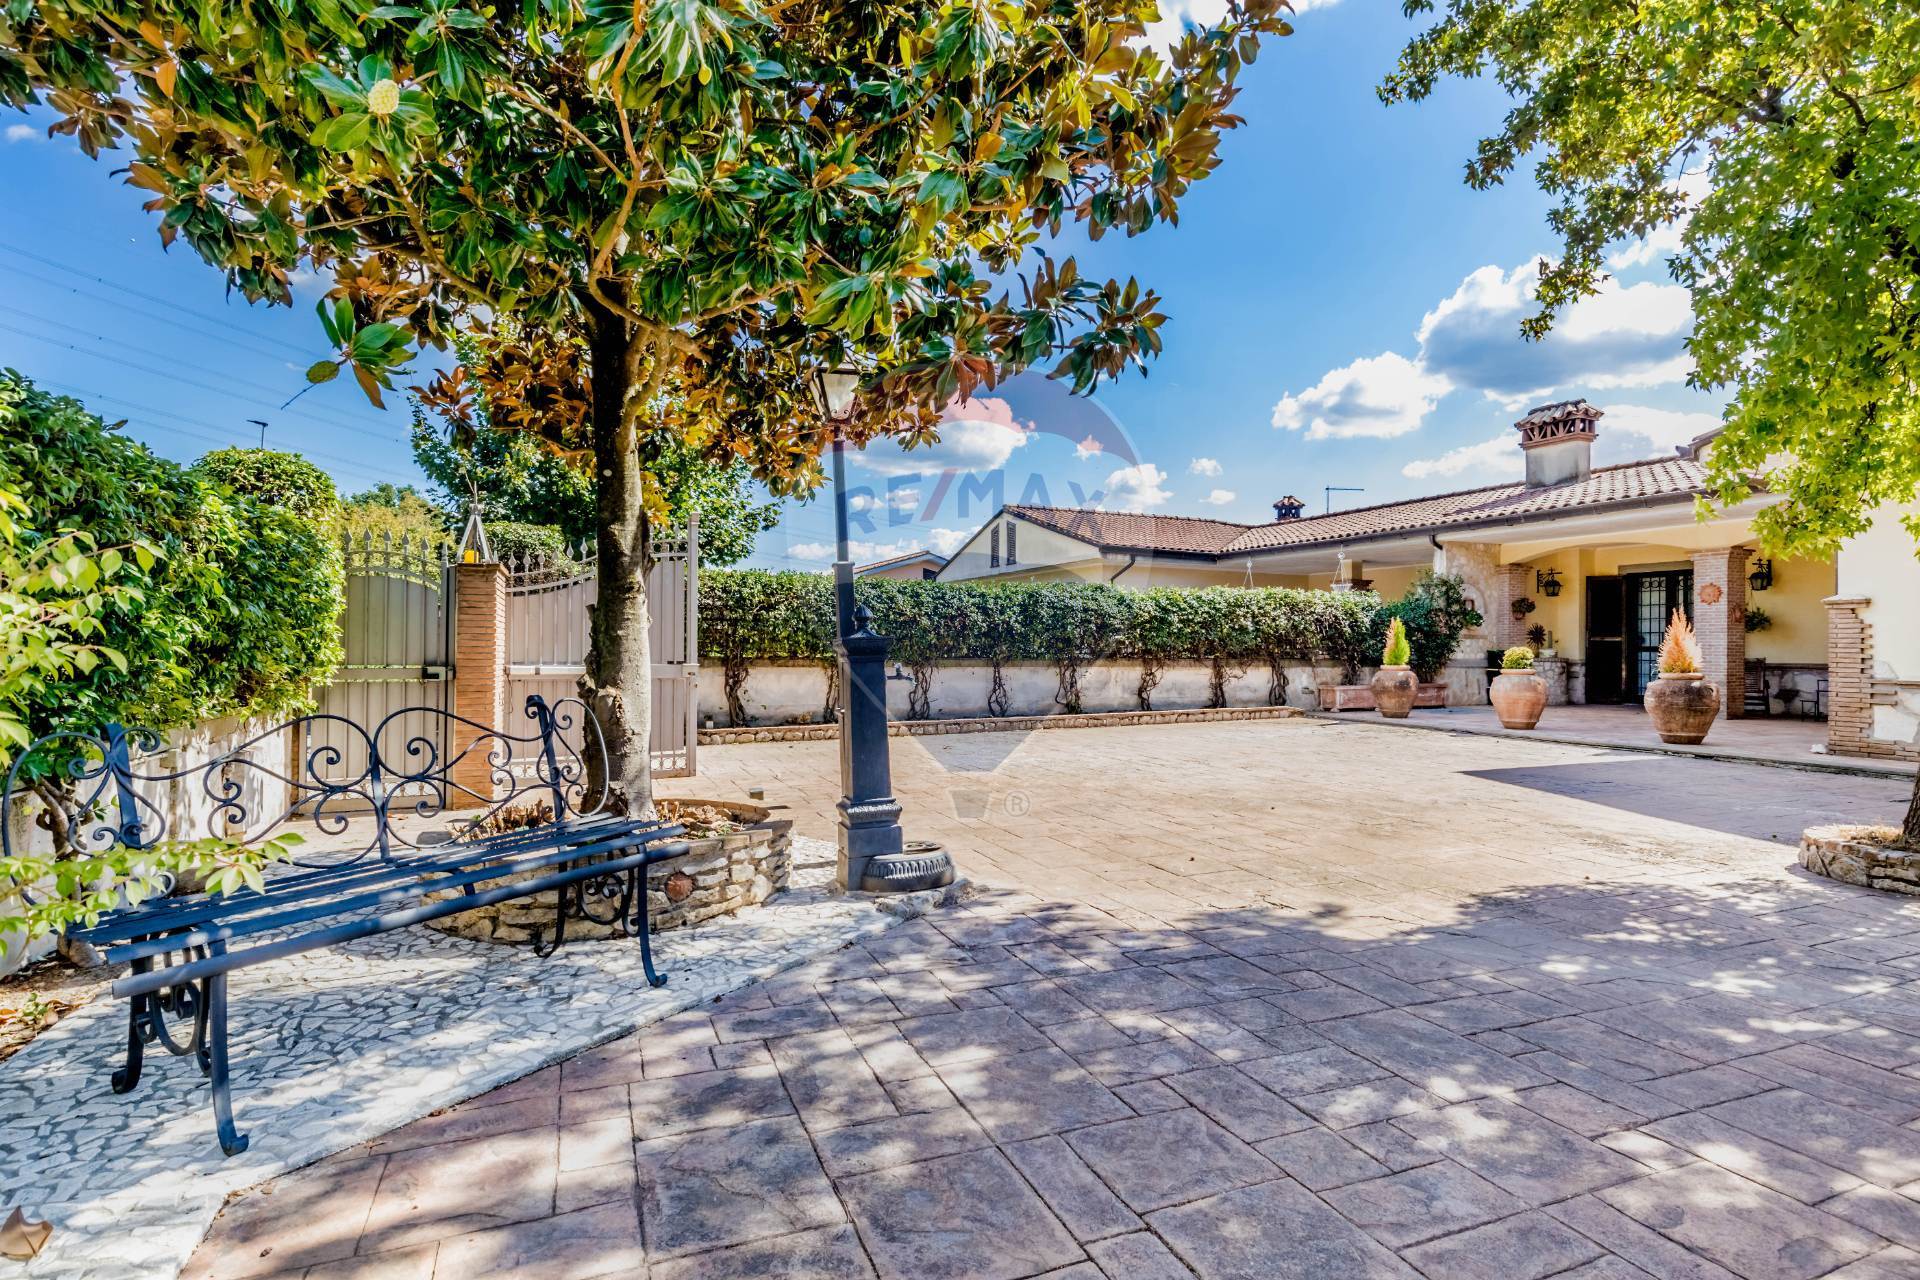 Villa Bifamiliare in vendita a Palestrina, 5 locali, prezzo € 289.000 | CambioCasa.it